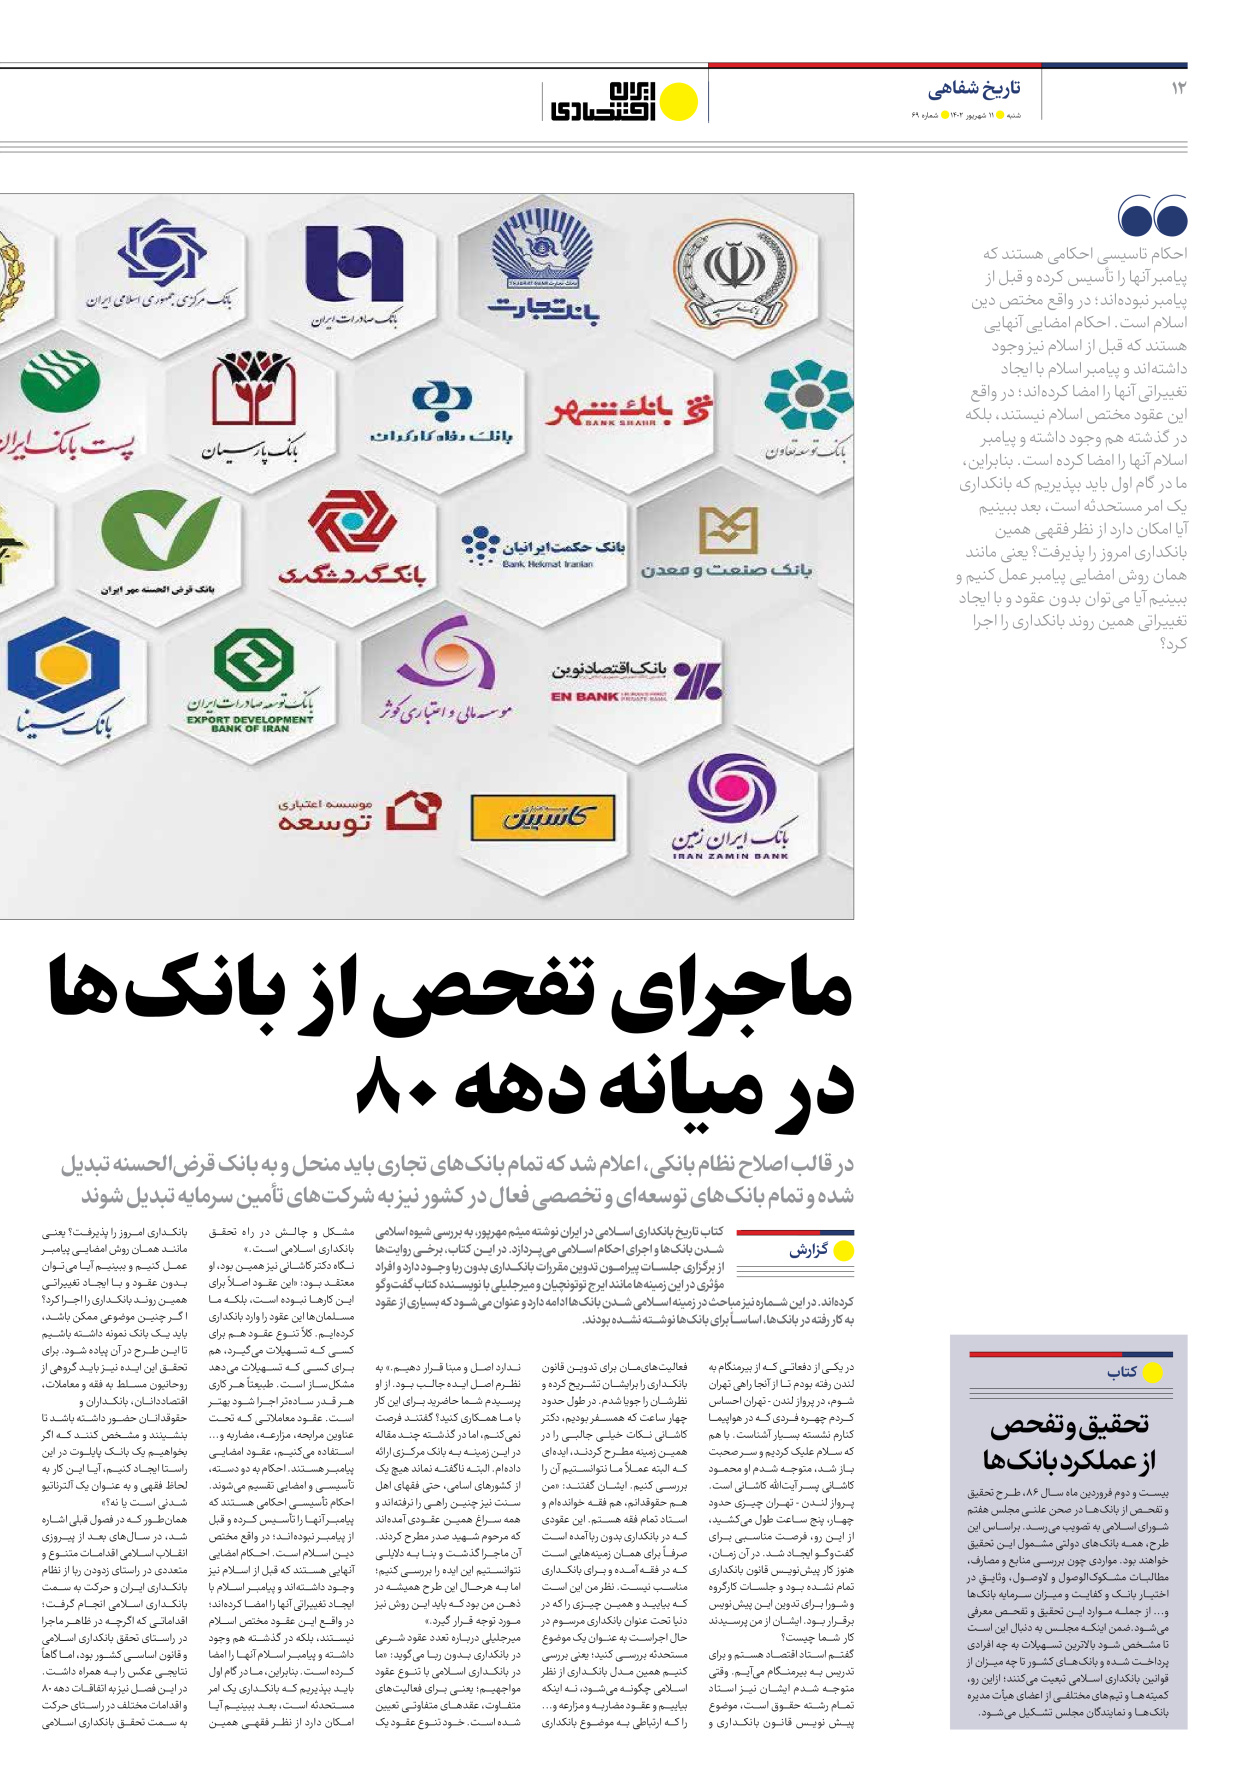 روزنامه ایران اقتصادی - شماره شصت و نه - ۱۱ شهریور ۱۴۰۲ - صفحه ۱۲